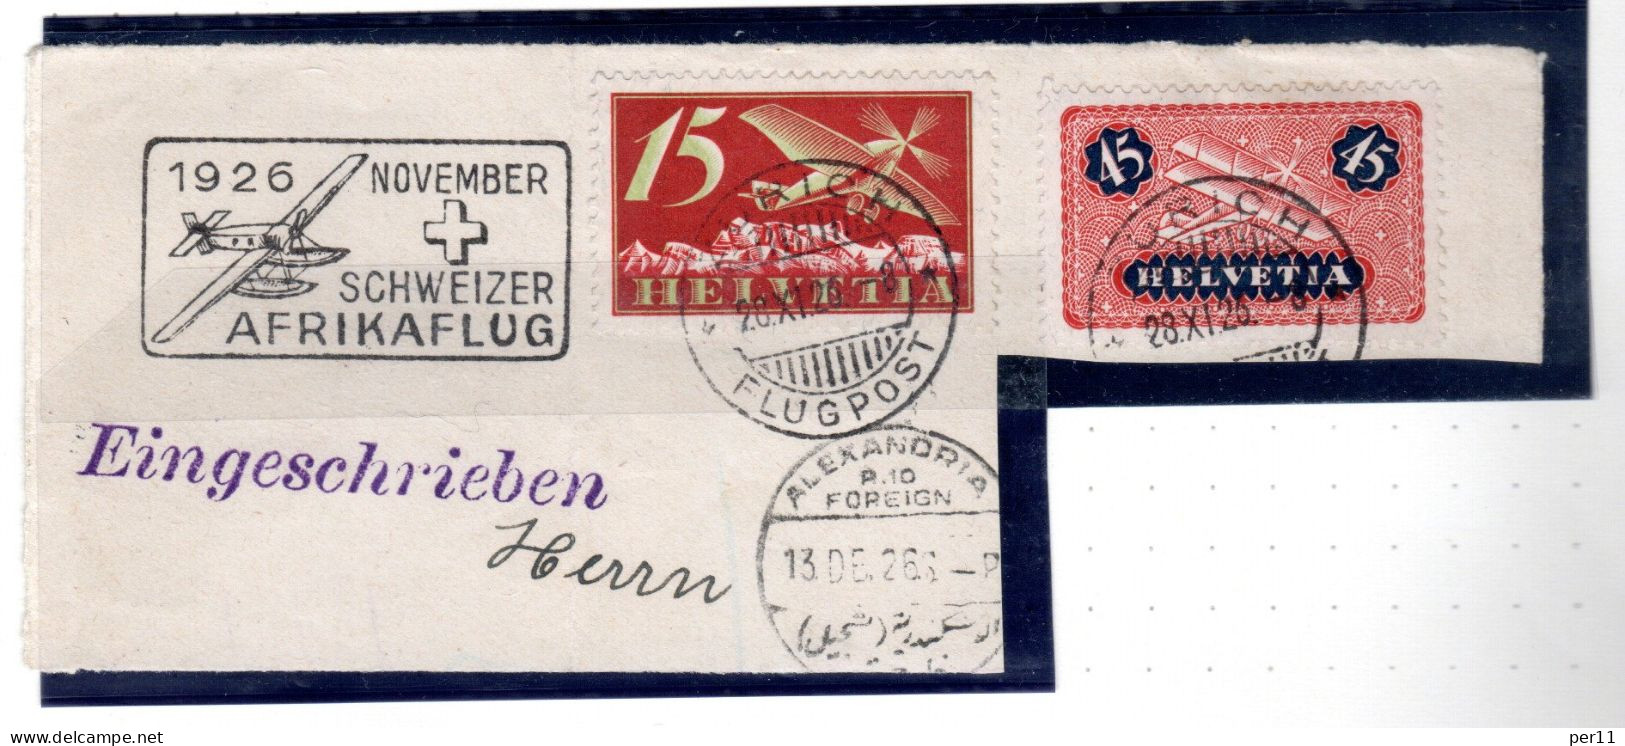 1926 November Afrikaflug , Part Of Registered Letter  (ch395) - Usati